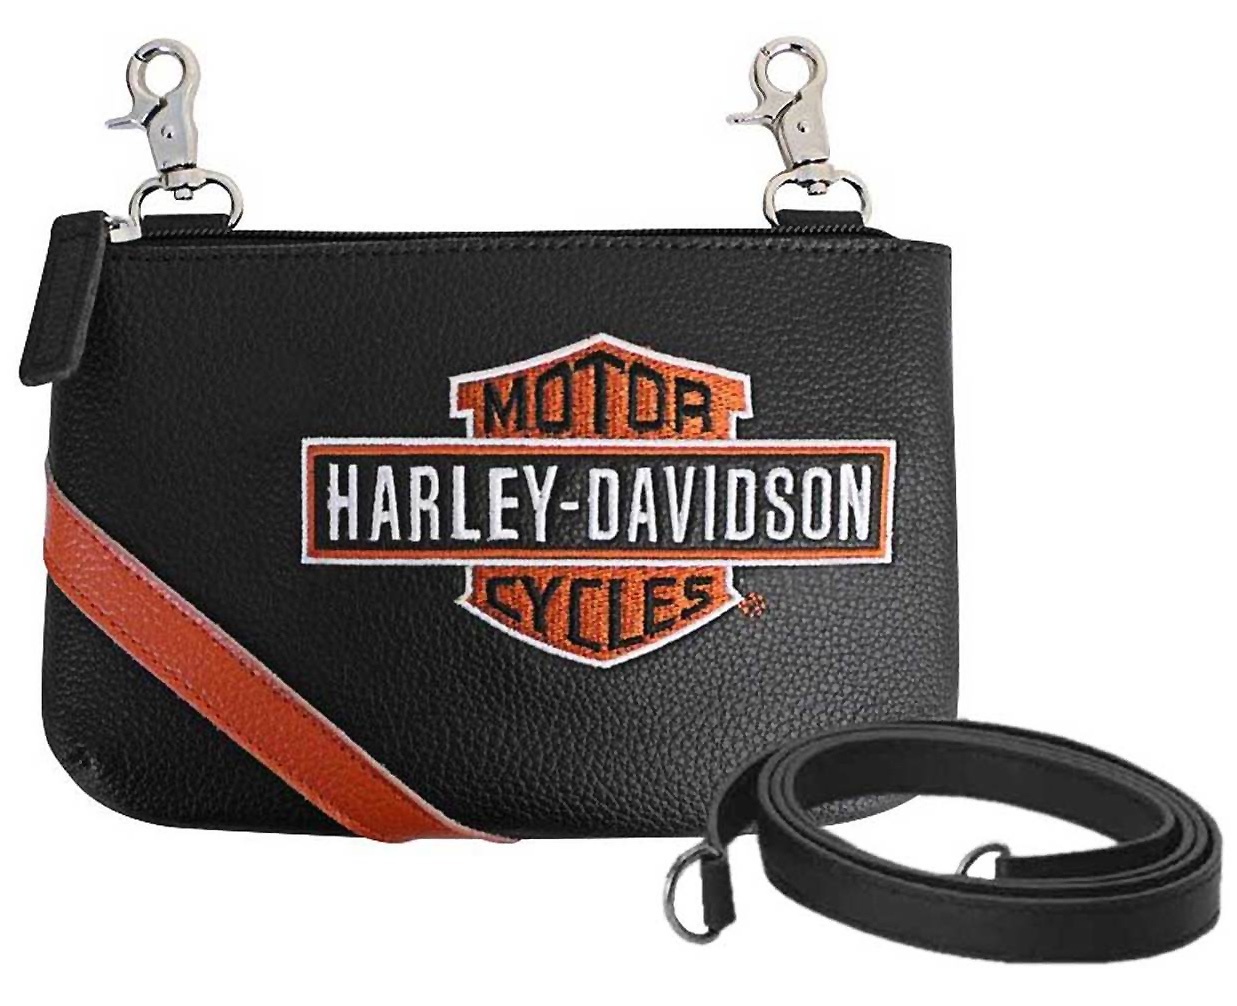 Harley Davidson Hand Bag Vintage Bar Shield Black Orange At Thunderbike Shop